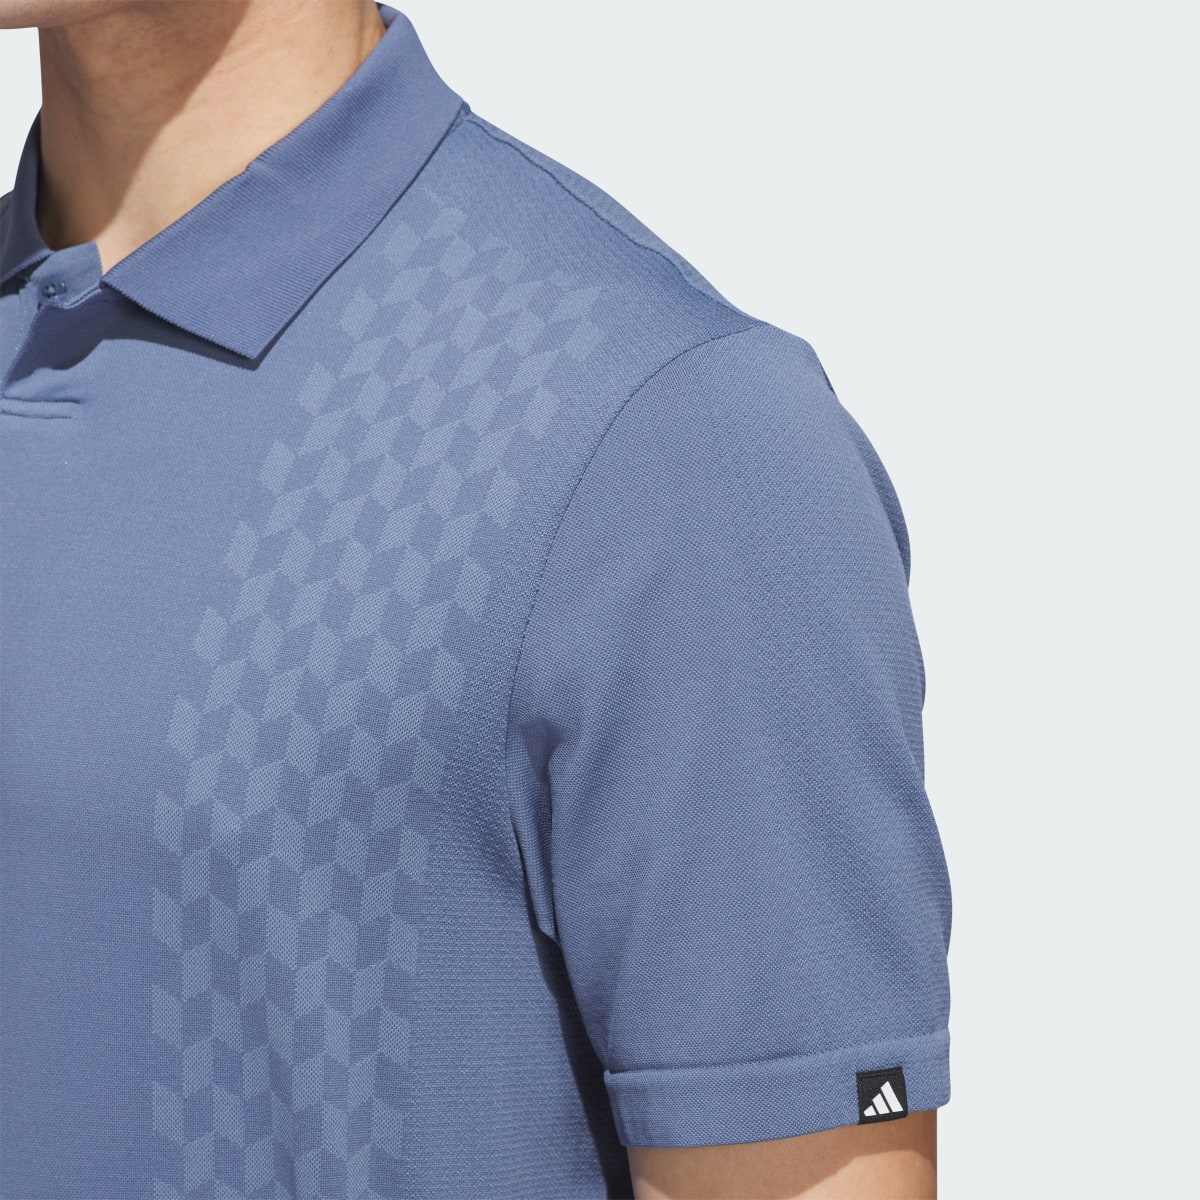 Adidas Koszulka Ultimate365 Tour Primeknit Polo. 7